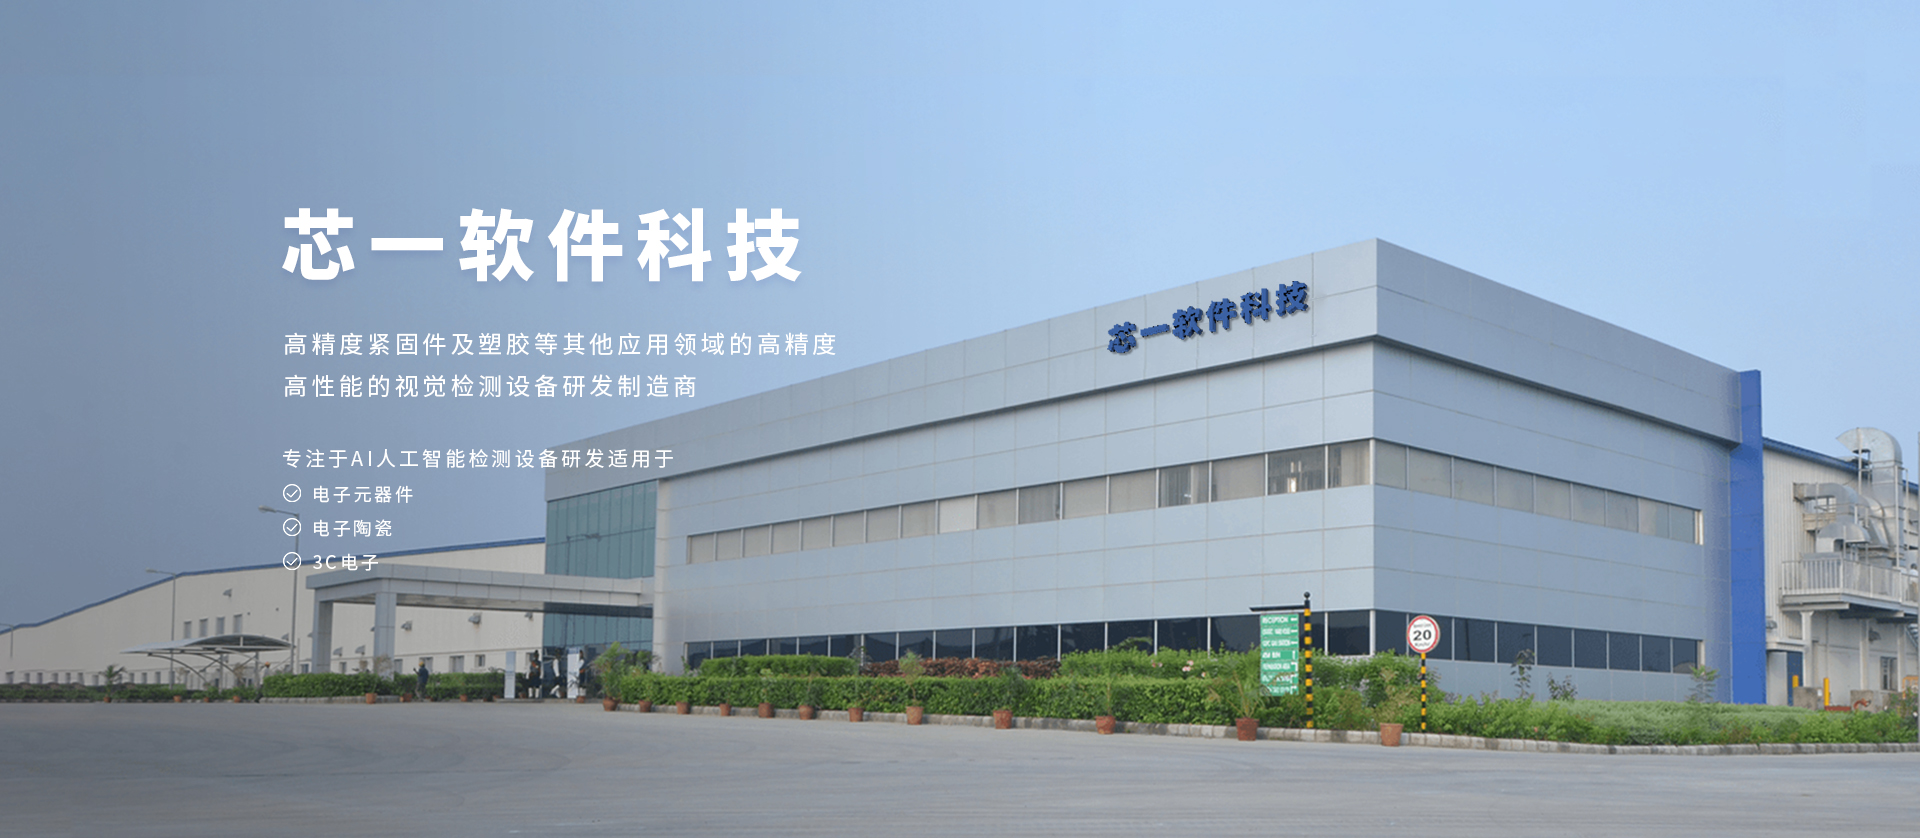 WuXi CINEE Technologies Co.Ltd.